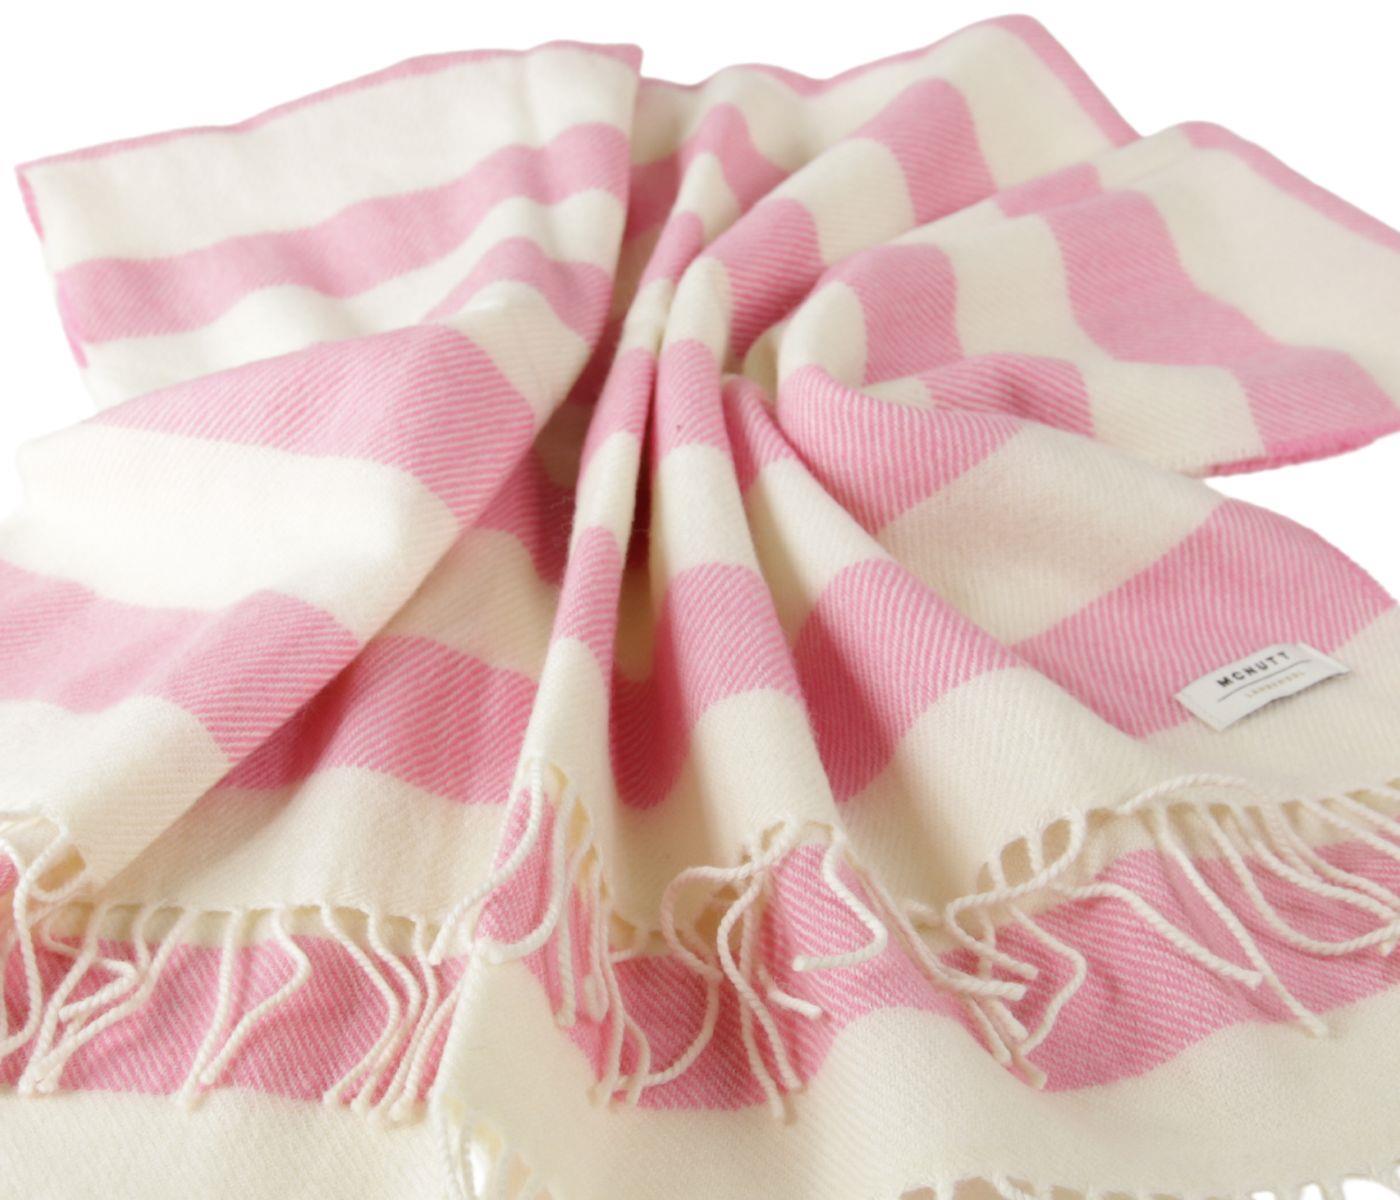 McNutt Babydecke aus 100% Wolle (Merino) in pink-weiß, gestreift, 104 x 67 cm